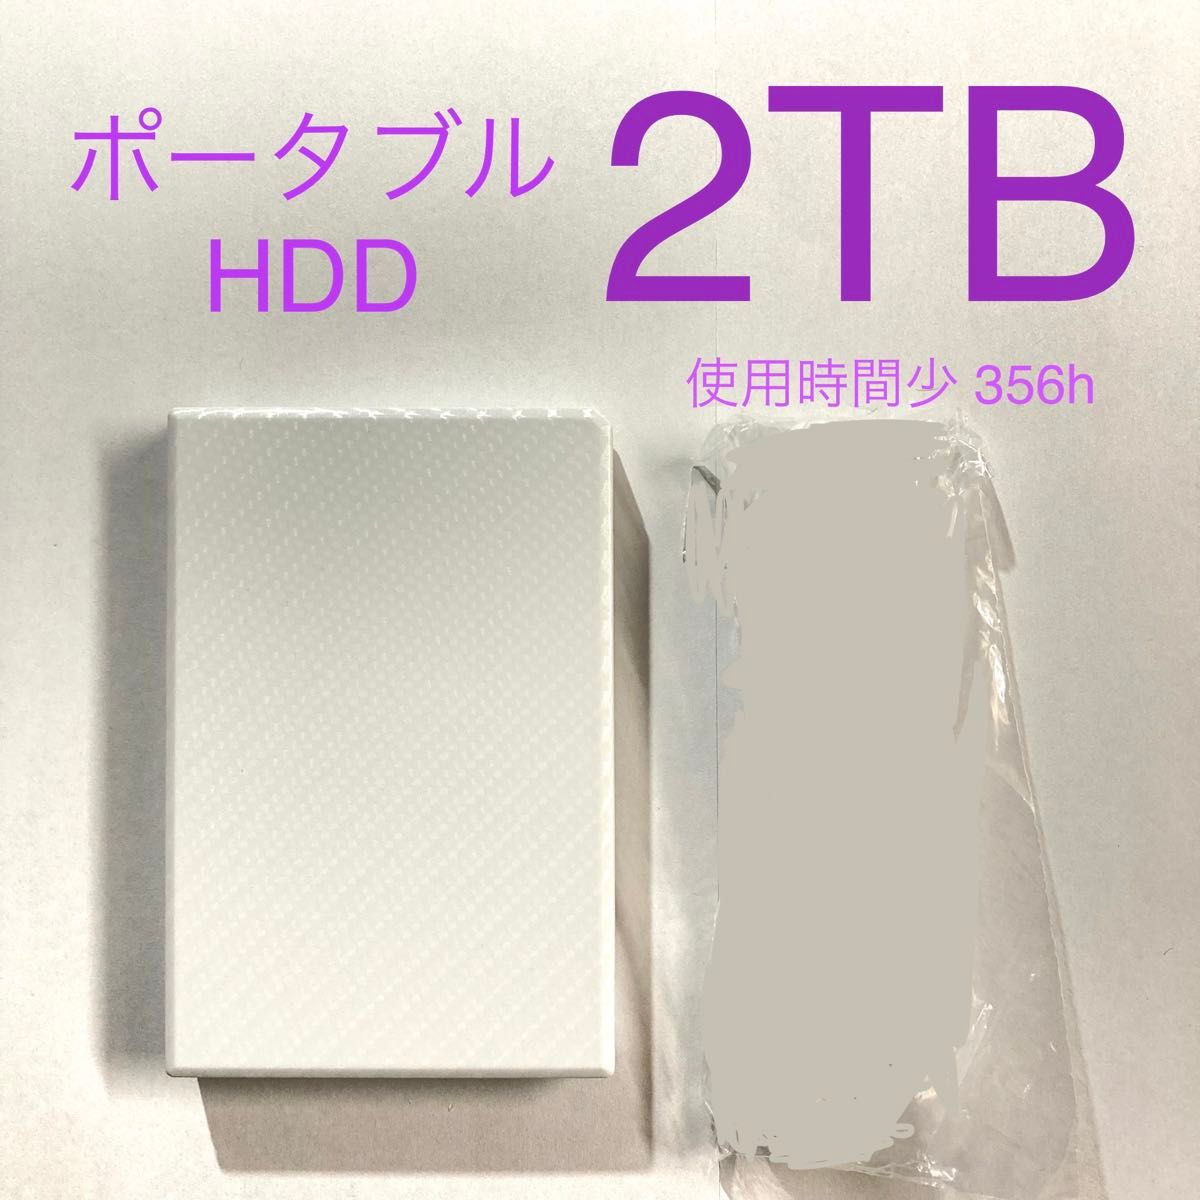 ★ 2TB カクうす I-O DATA ポータブルHDD HDPT-UTS2W ポータブルハードディスク USB3.0 中古 ★ 